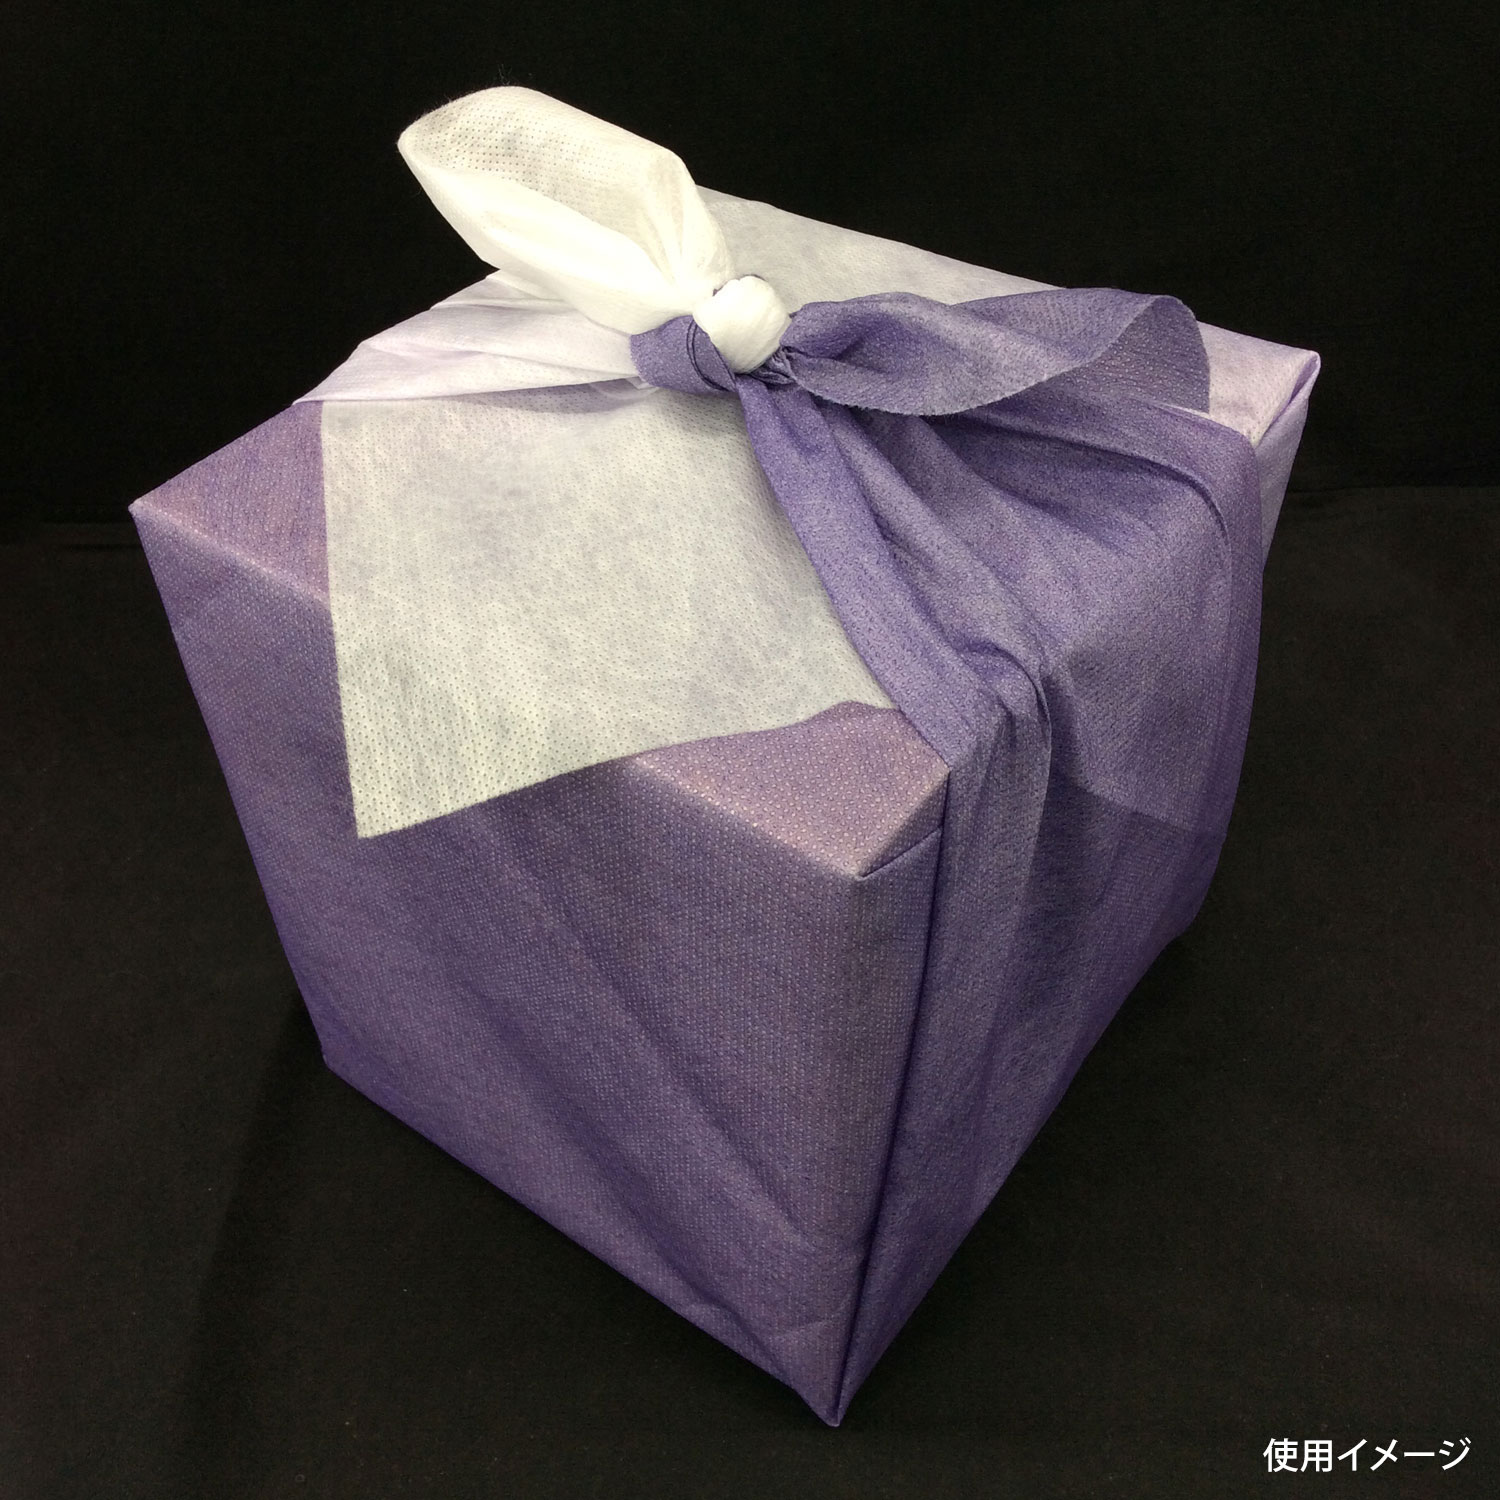 【600枚】風呂敷 優雅 ボカシ紫 90×90c...の商品画像